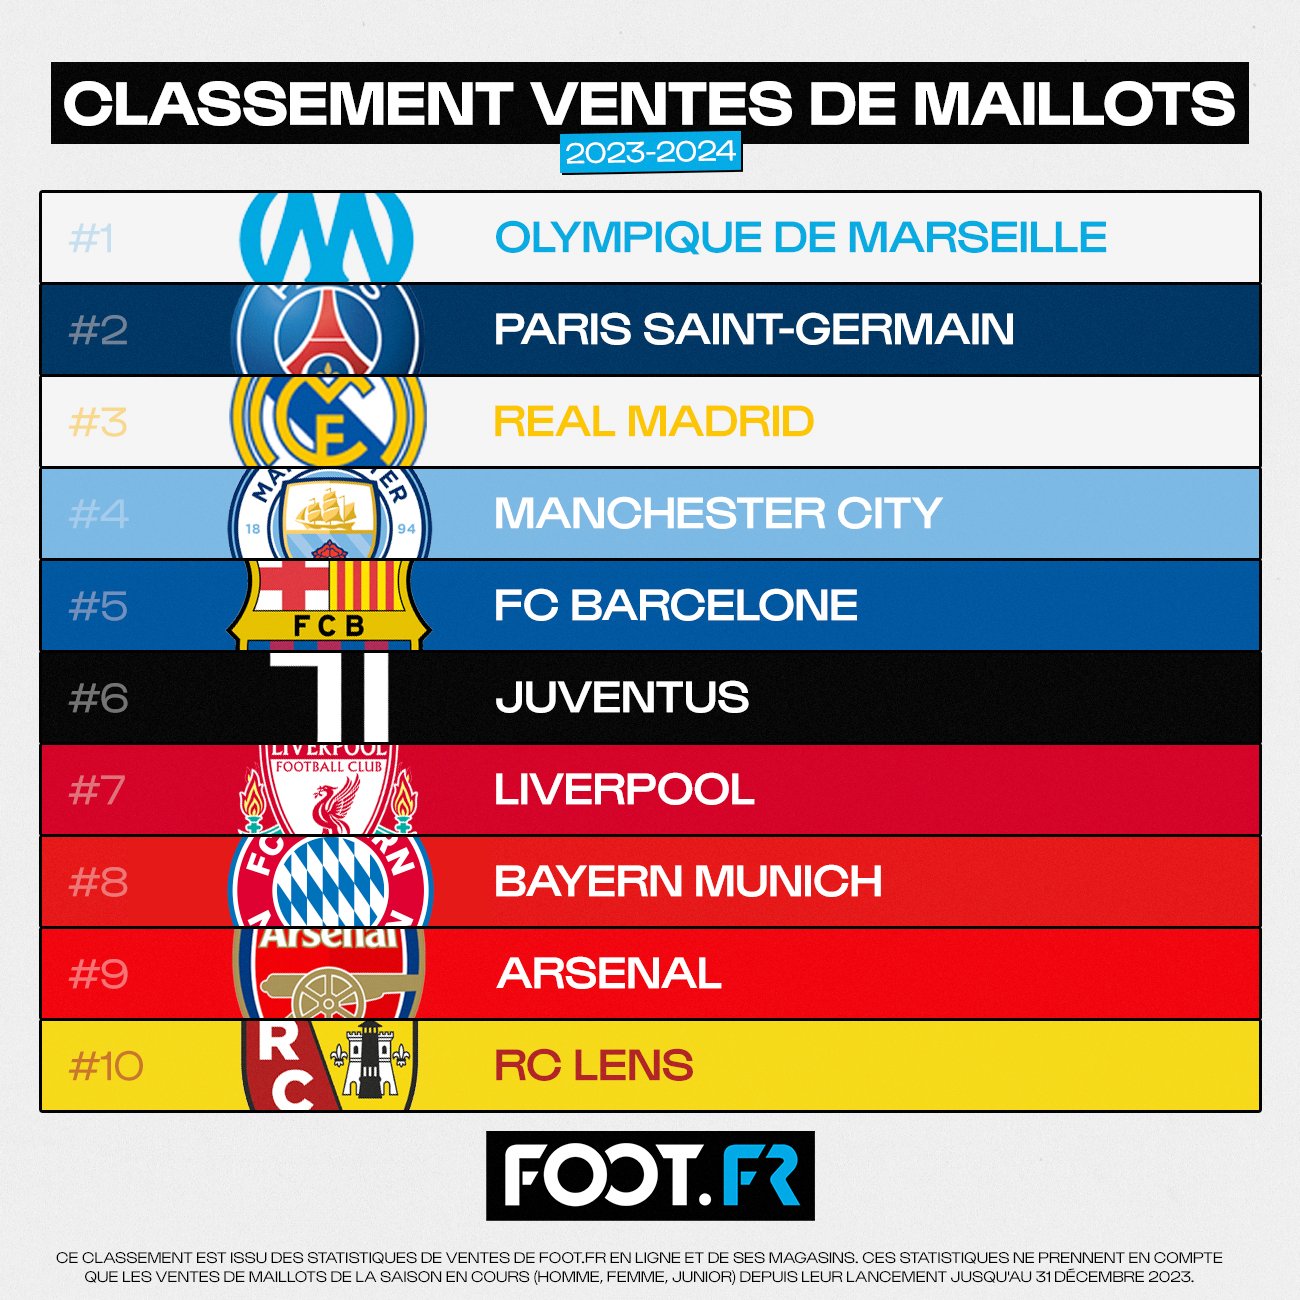 Meilleures ventes de maillots de foot en France (saison 2023/24)